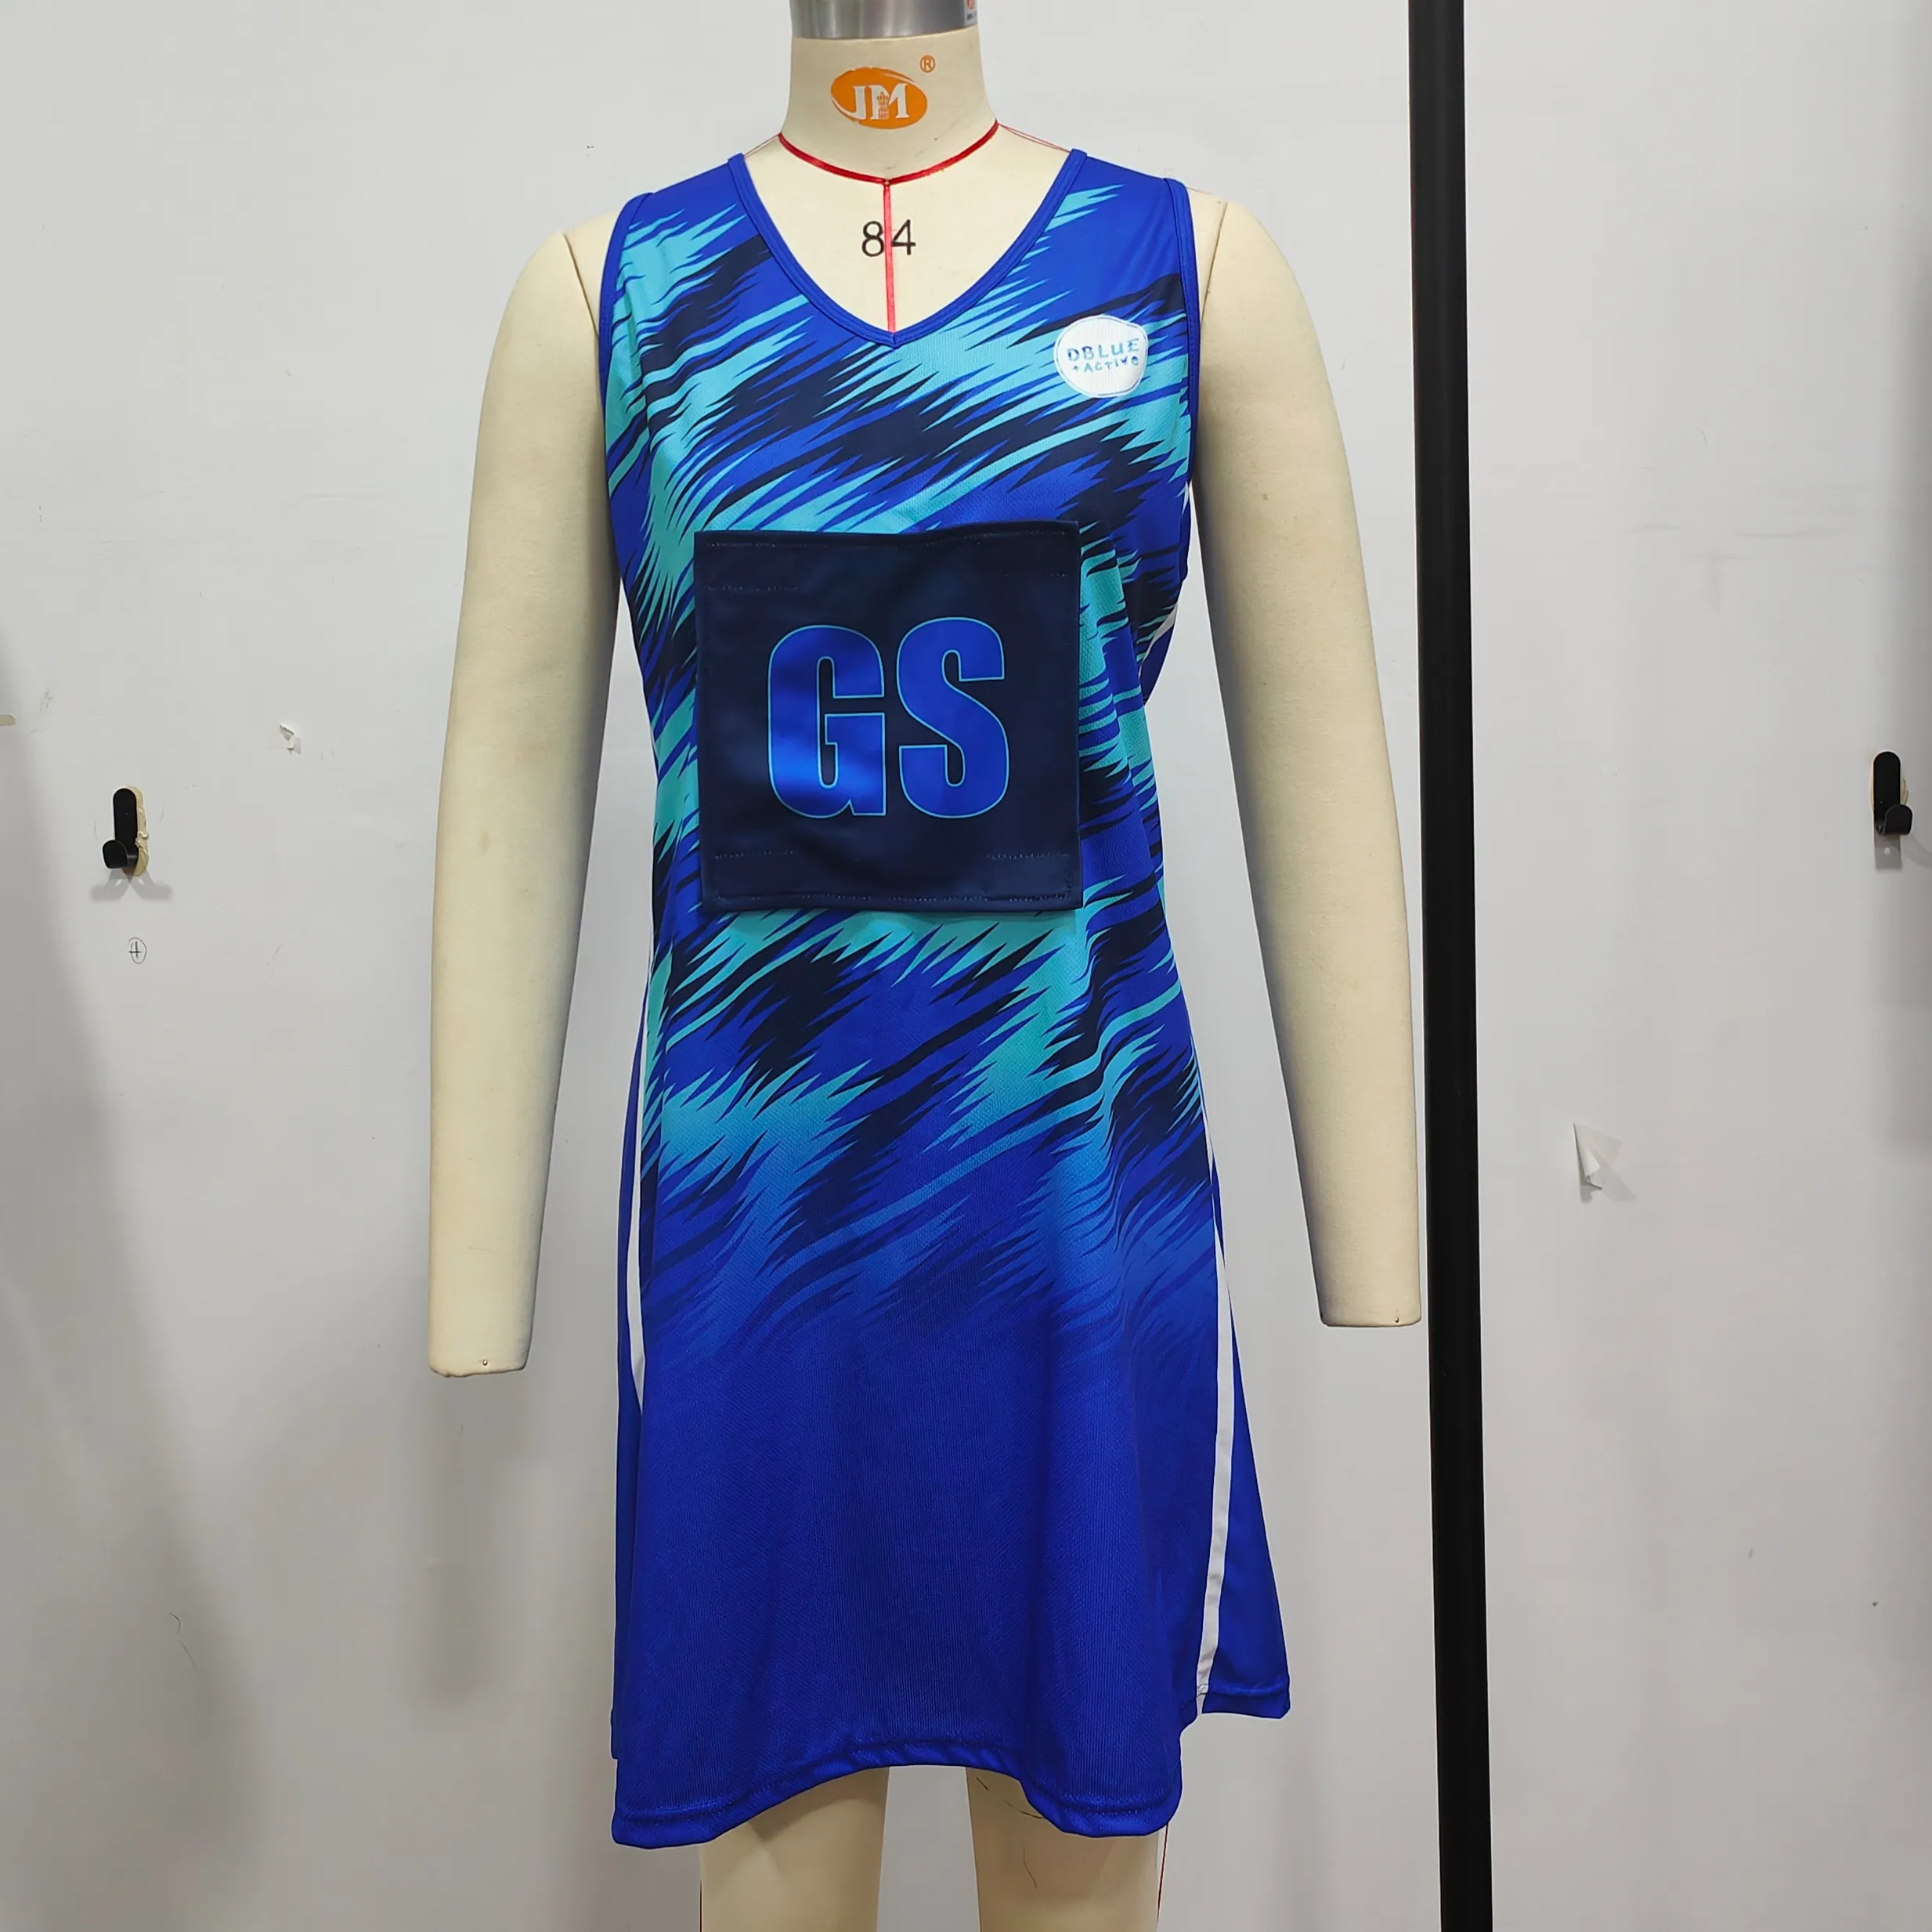 Платье Netball, униформа для девочек, женское теннисное платье по индивидуальному заказу, низкая цена, оптовая продажа, платье Netball